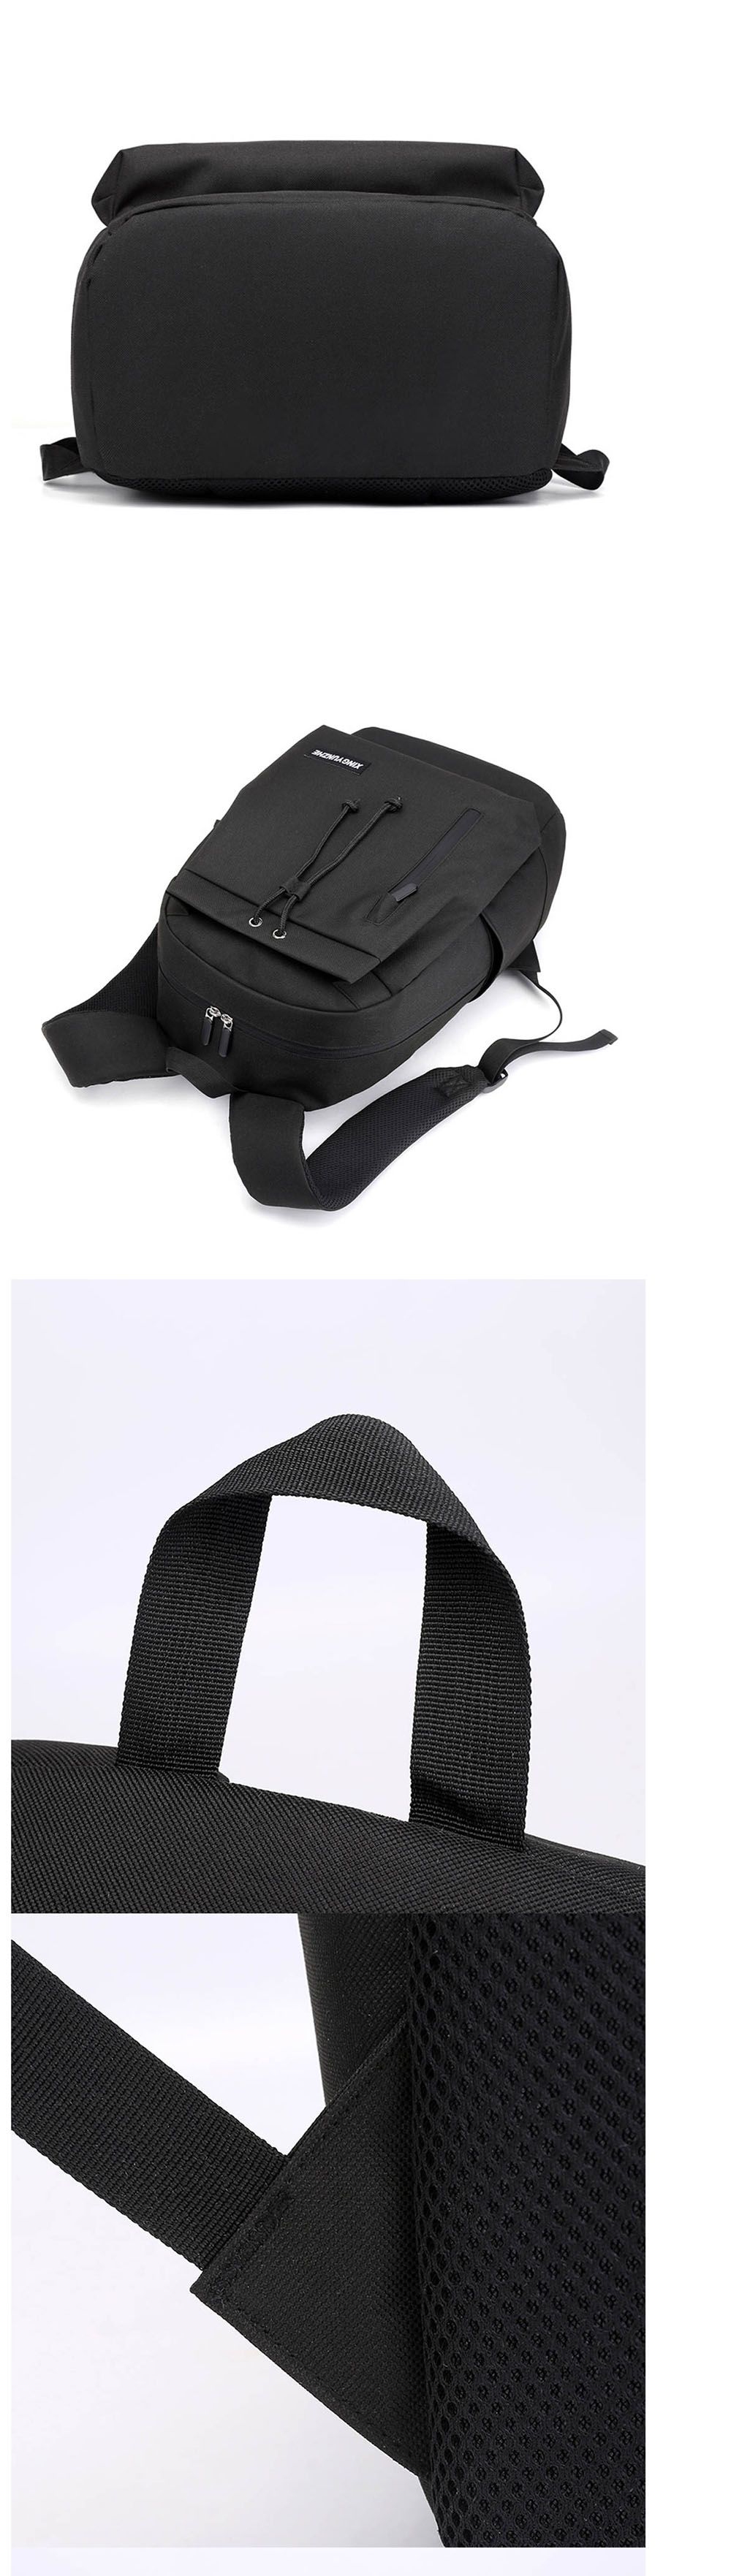 Oxford-Backpack-Laptop-Bag-with-USB-Charging-Port-Student-School-Bag-Fashion-Shoulder-Bag-for-156-in-1554758